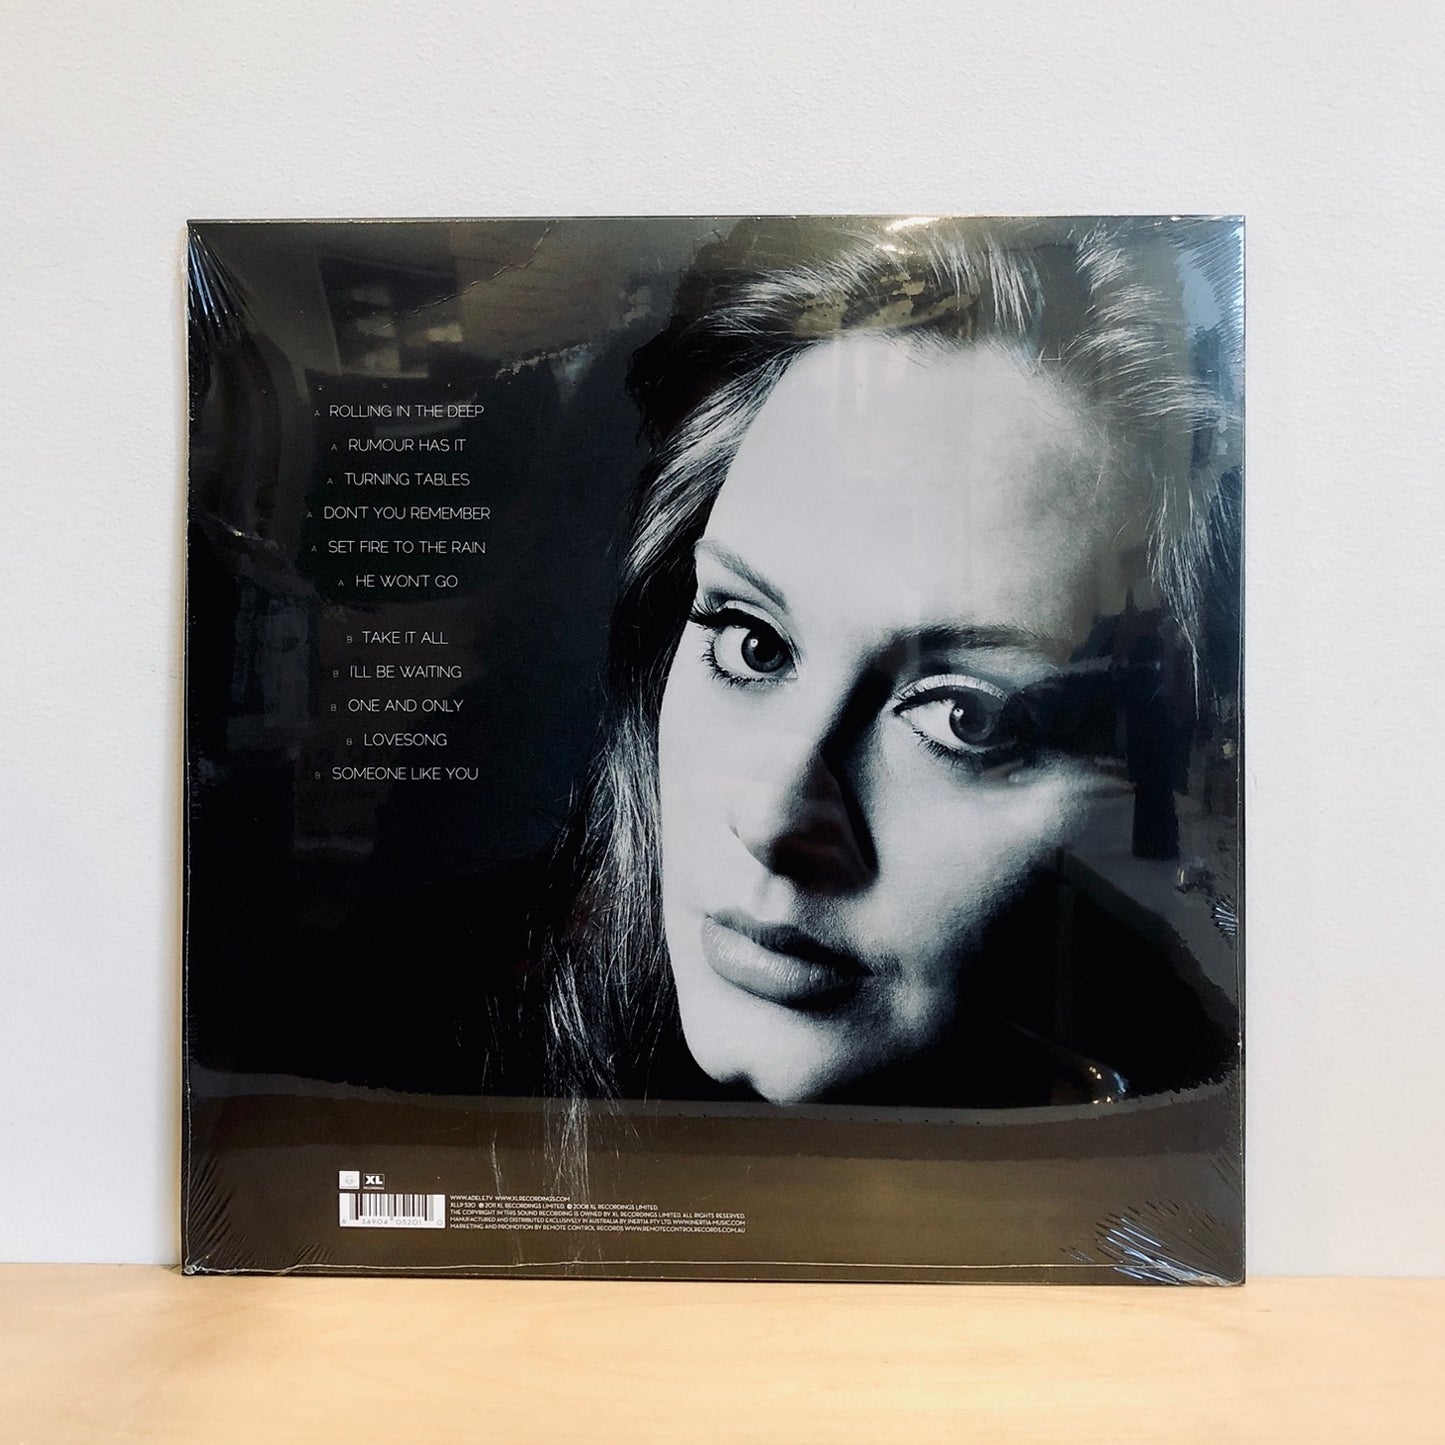 Adele - 21. LP [2022 Re-press]